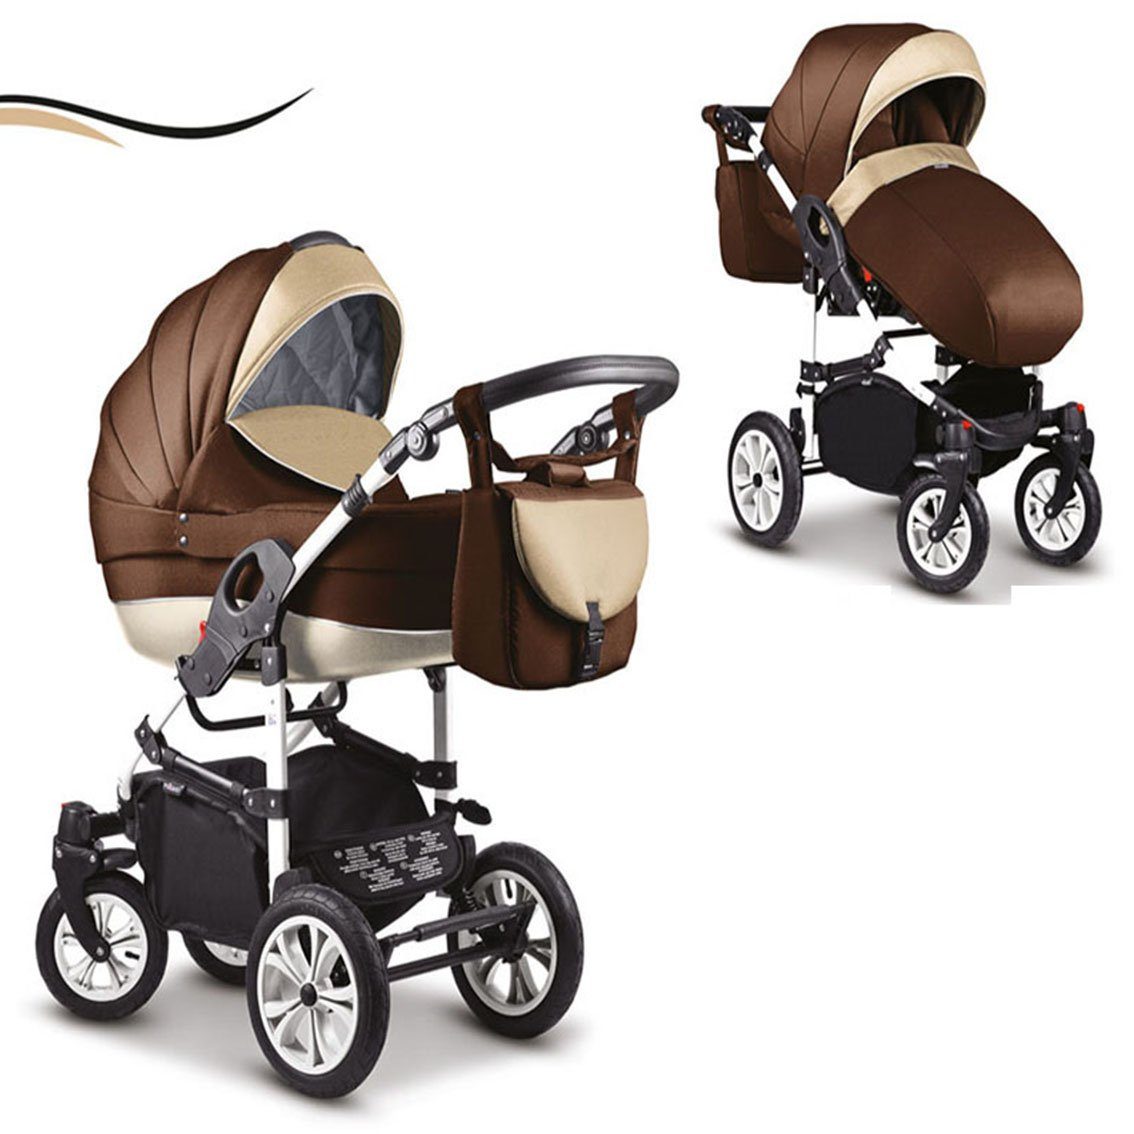 babies-on-wheels Kombi-Kinderwagen 2 in 1 - 16 Farben - Teile Cosmo 13 in Braun-Weiß Kinderwagen-Set